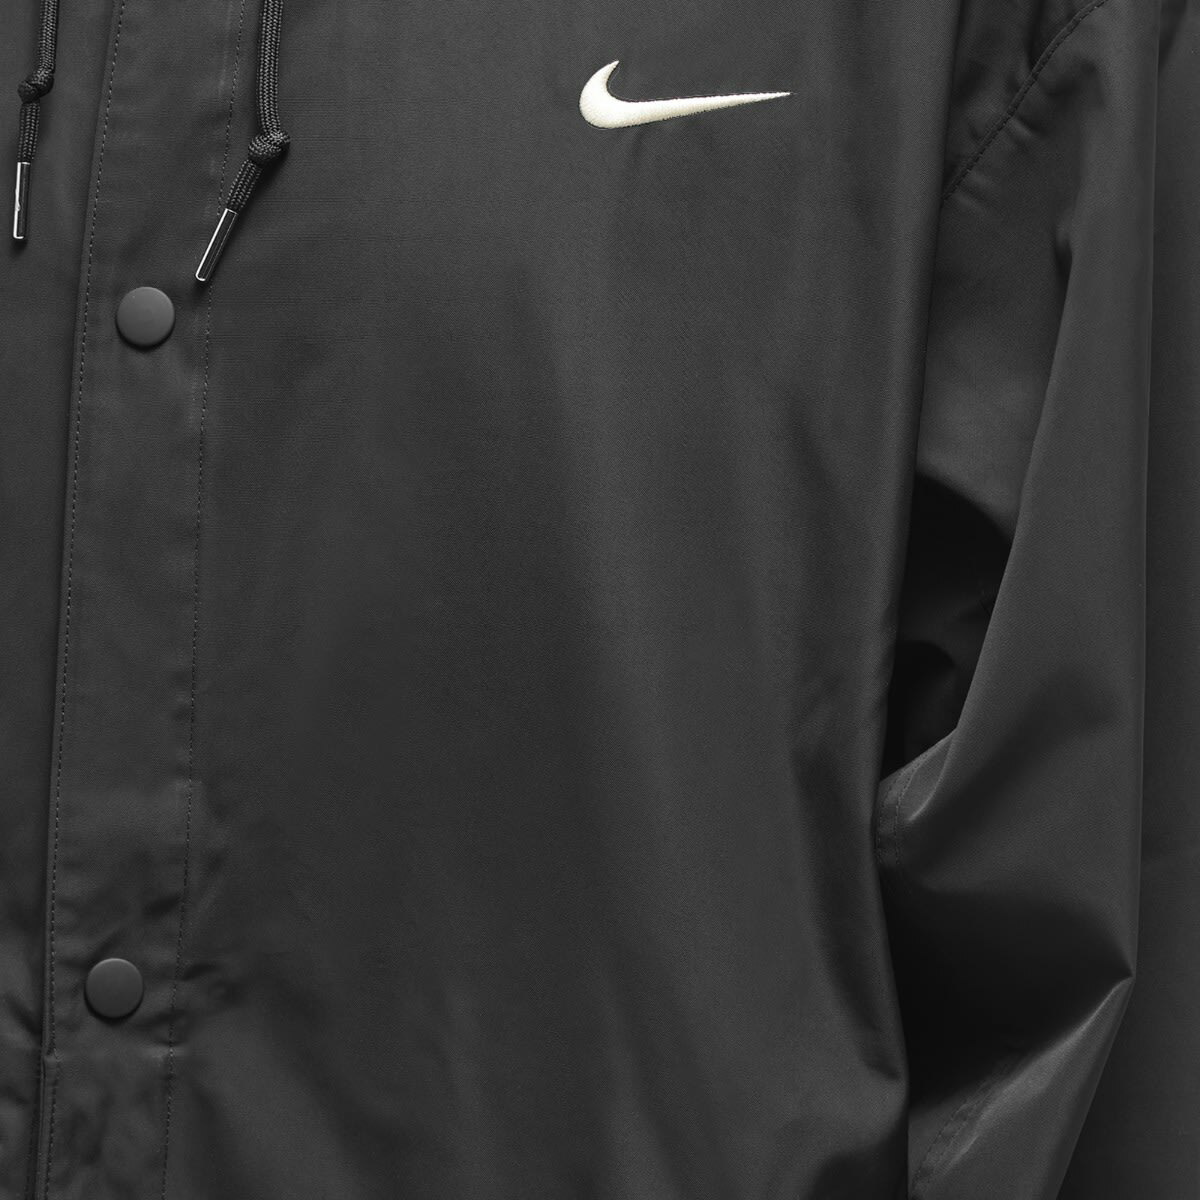 Nike Men's Swoosh Woven Parka Jacket in Black/Coconut Milk Nike